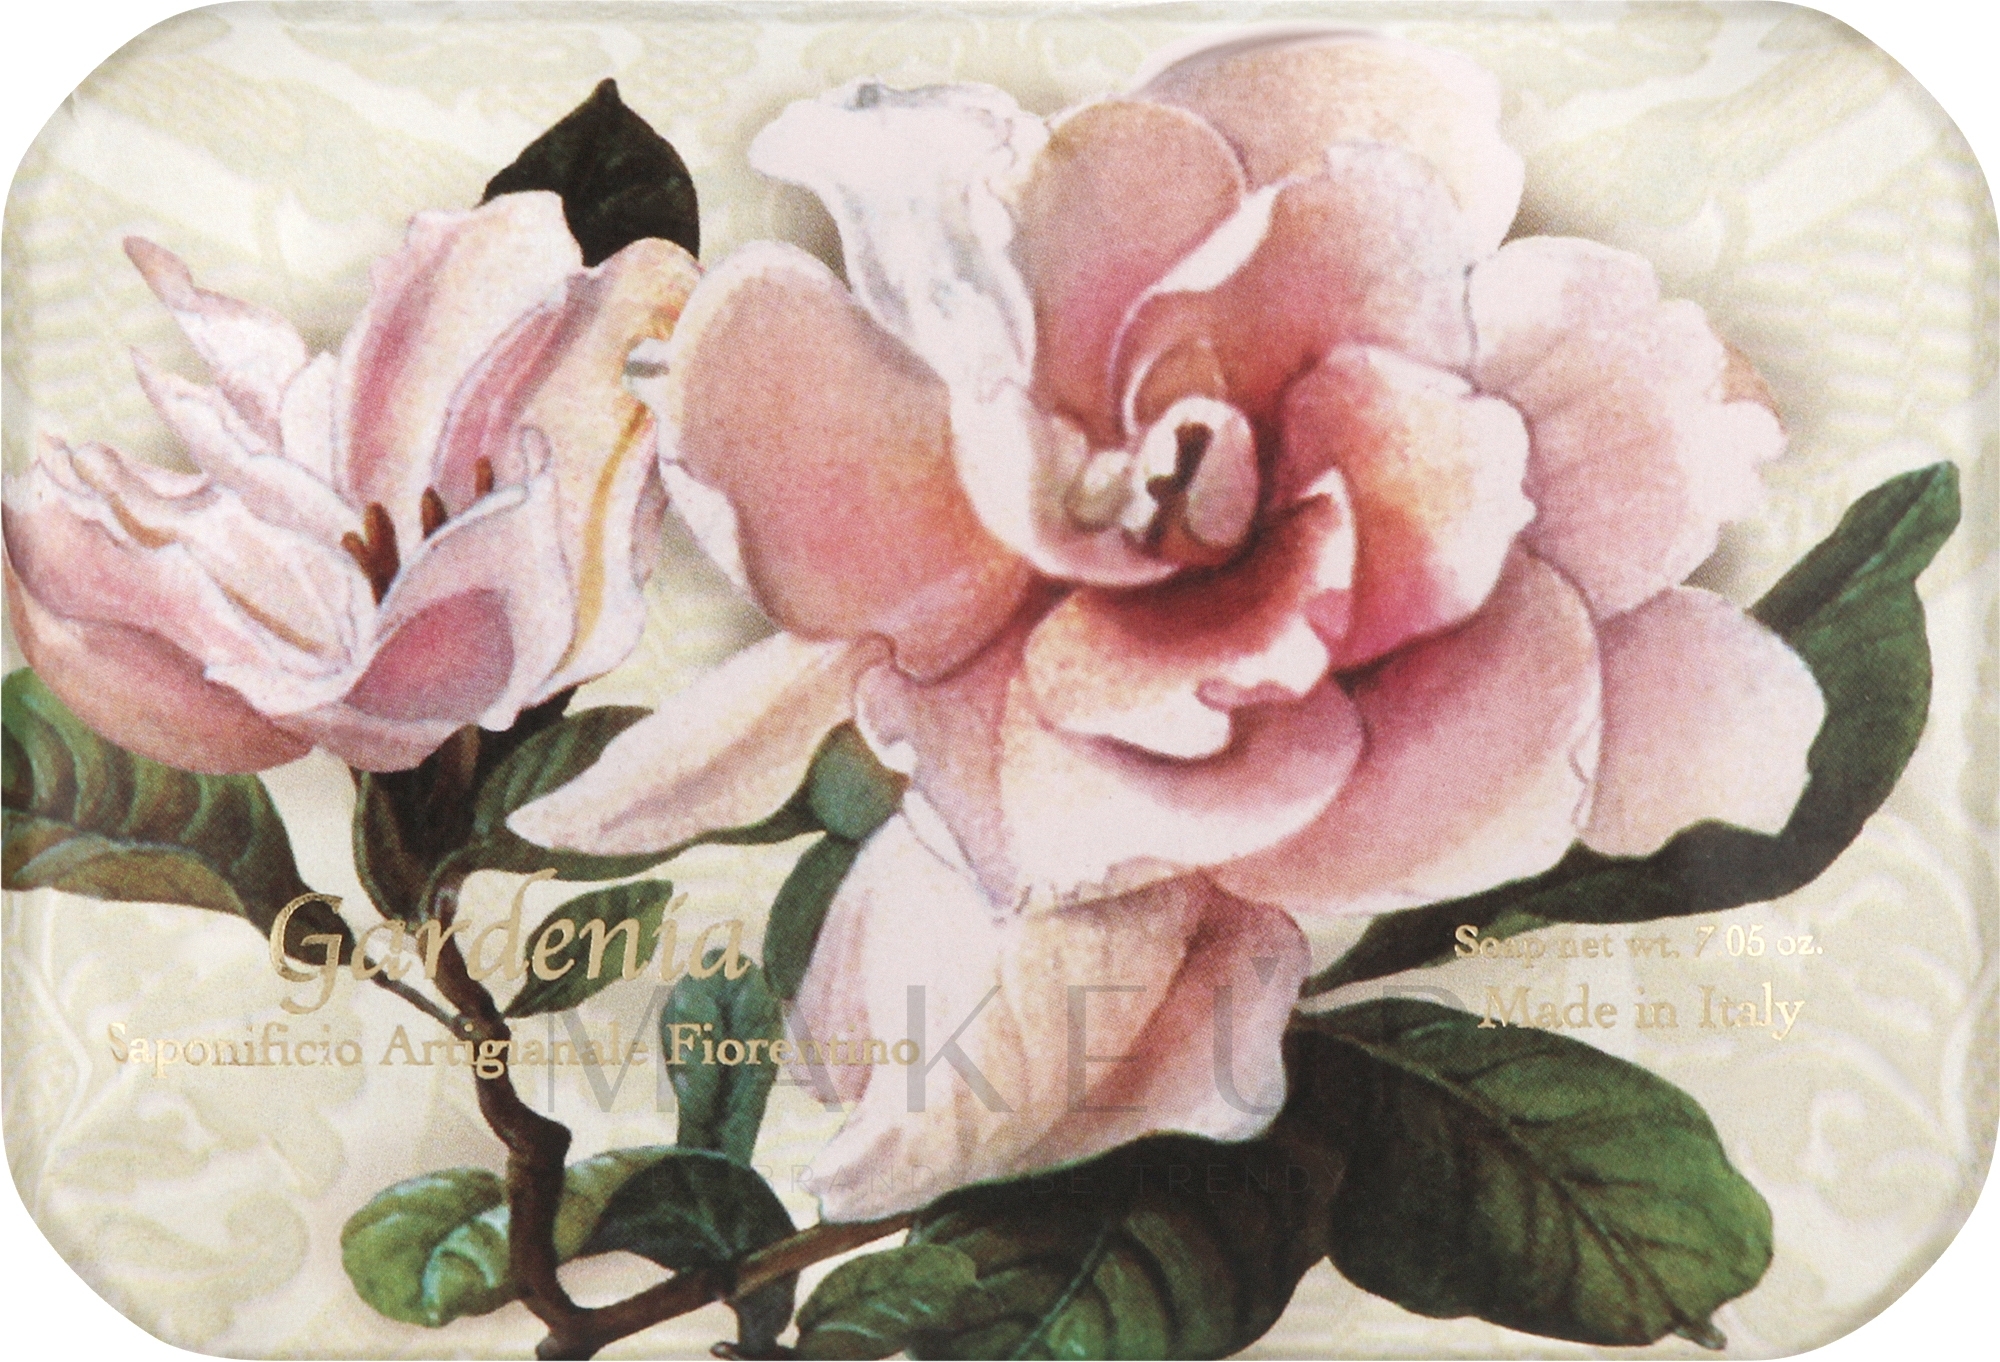 Naturseife Gardenia - Saponificio Artigianale Fiorentino Gardenia Sinfonia di Fiori Collection — Foto 200 g